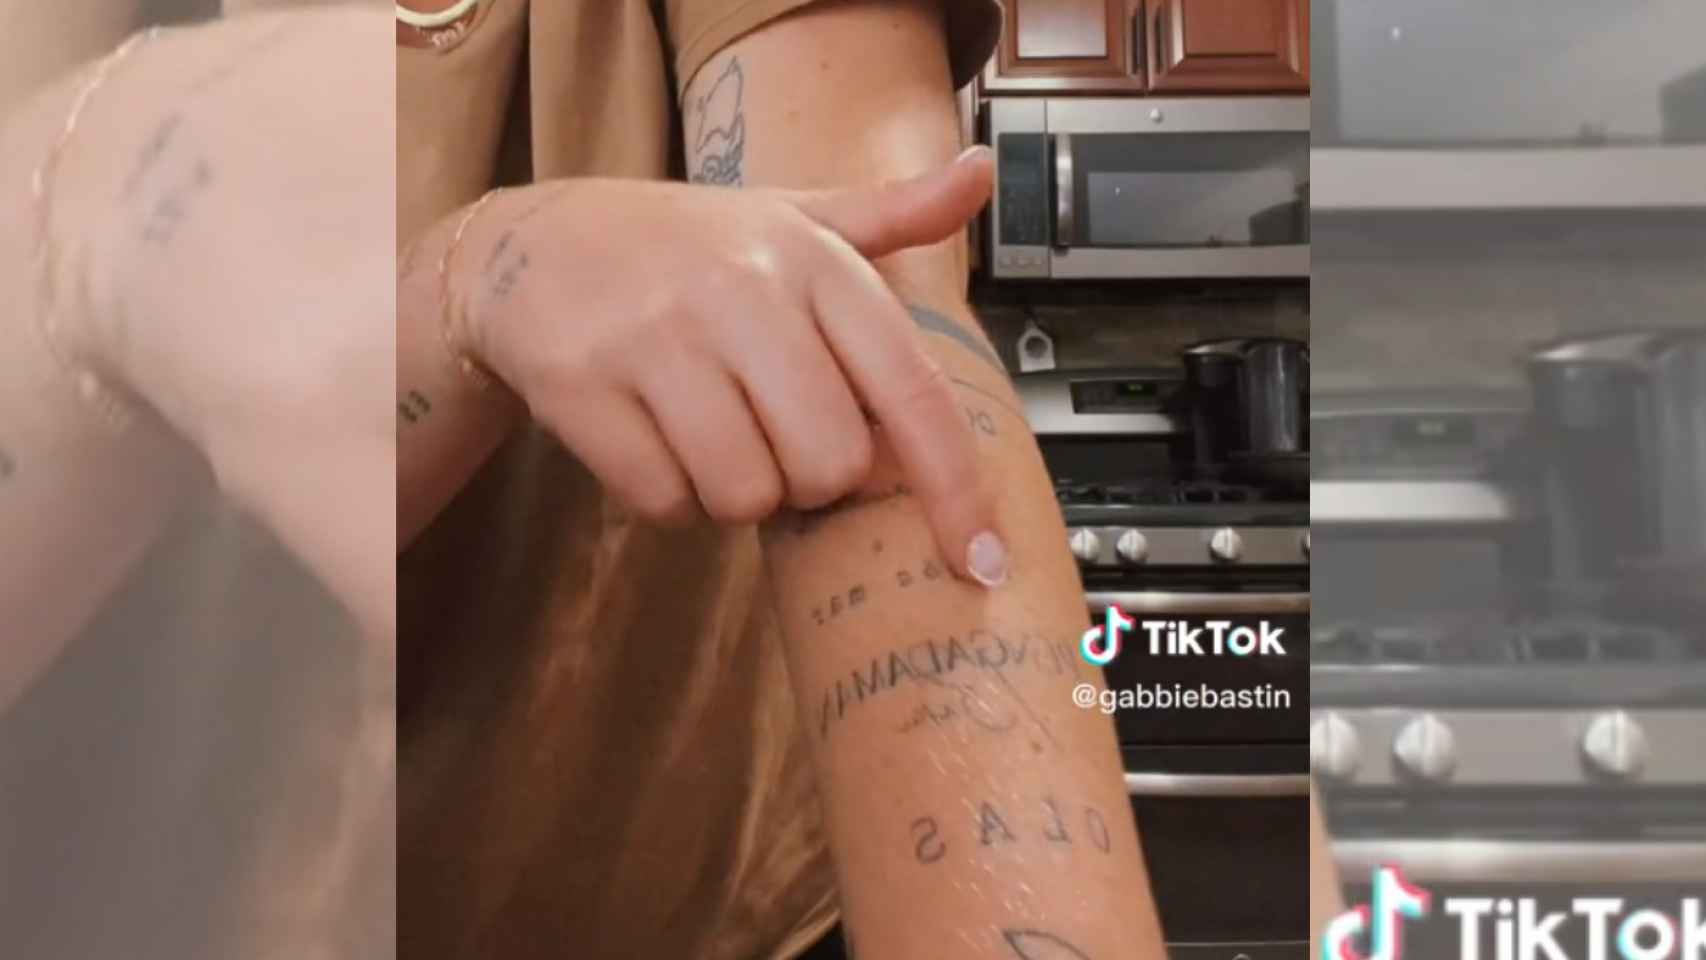 La Tiktoker Gabbie Bastin explica el significado de sus tatuajes / TIKTOK